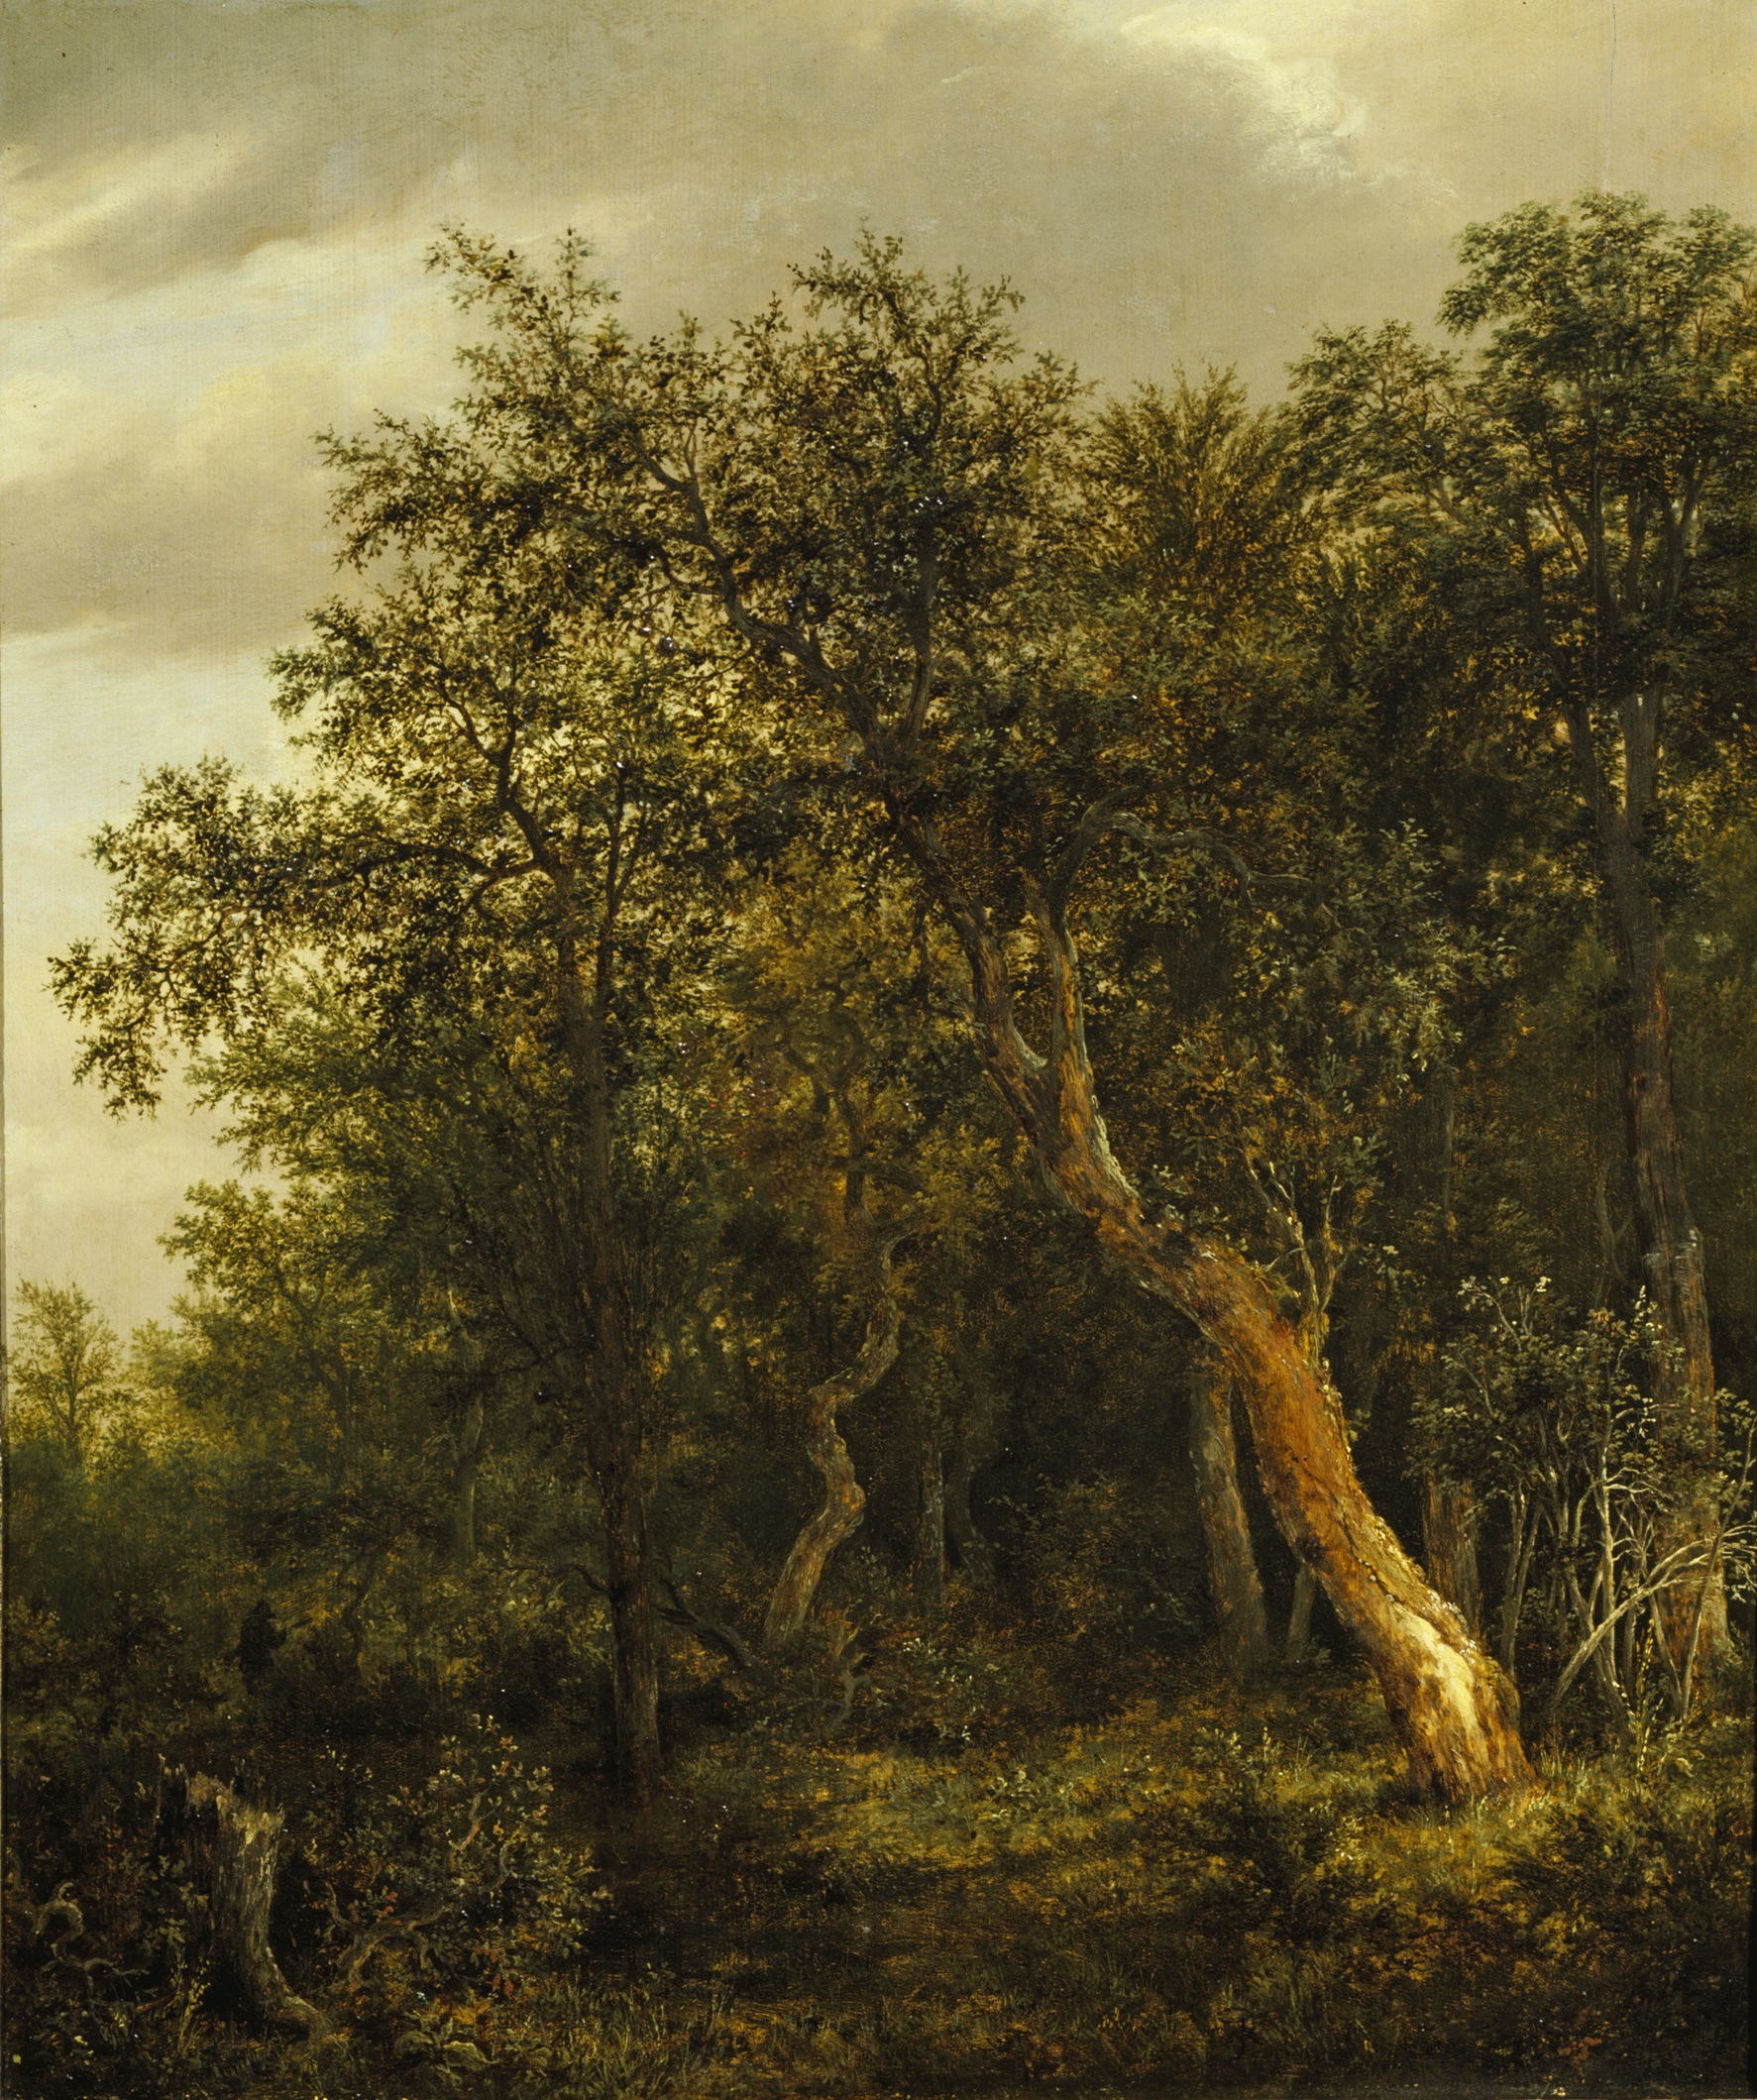 Radura nella Foresta by Jacob van Ruisdael - 1646 circa - 57,5 x 47 cm Accademia di Belle Arti, Vienna